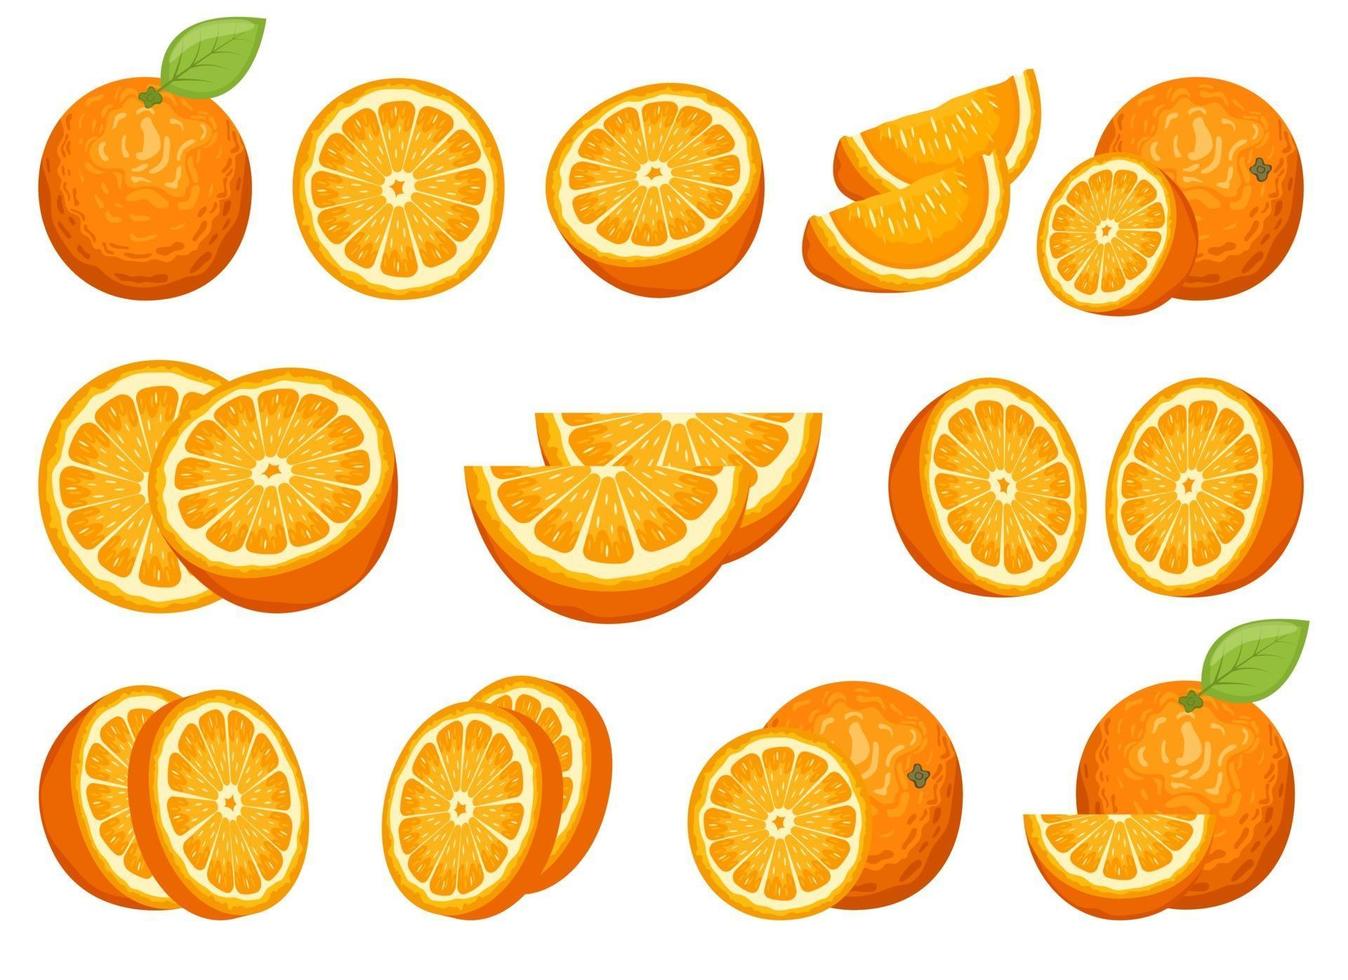 Delicious orange fruit vector design set illustration isolated on white background